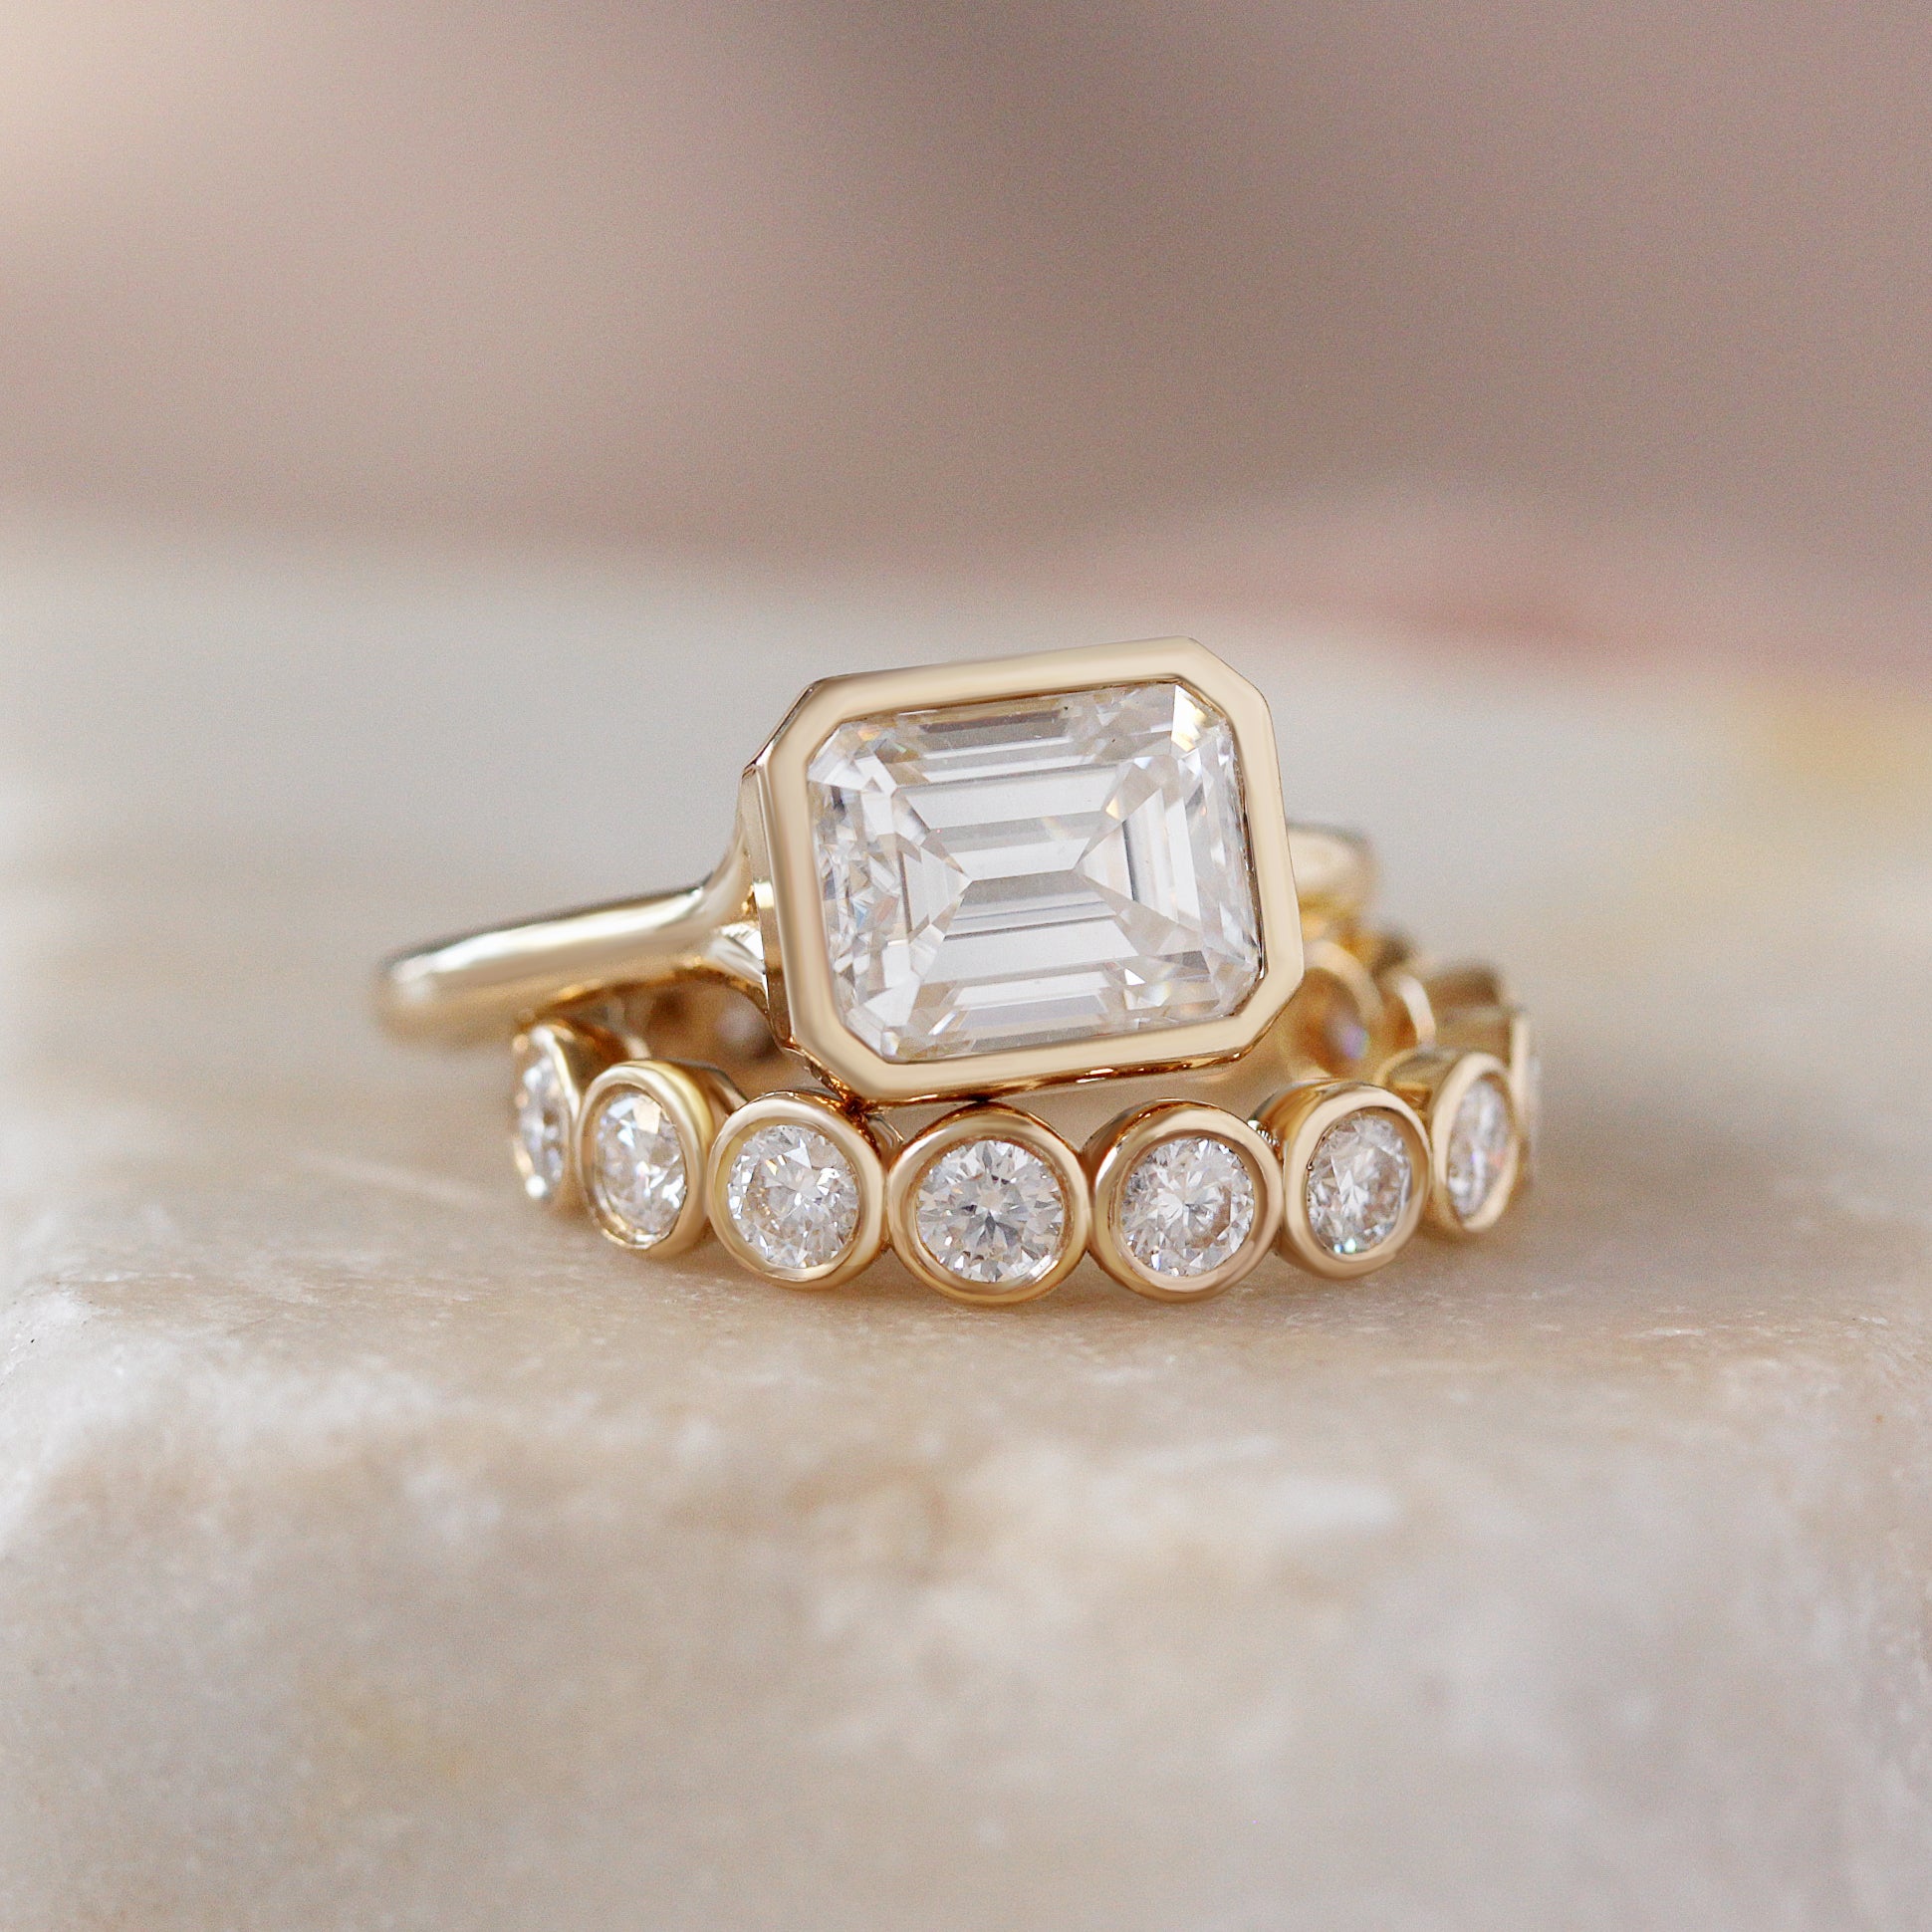 Ten Points Diamonds Bubbles Bezel Full Eternity Wedding Ring - 4mm wide